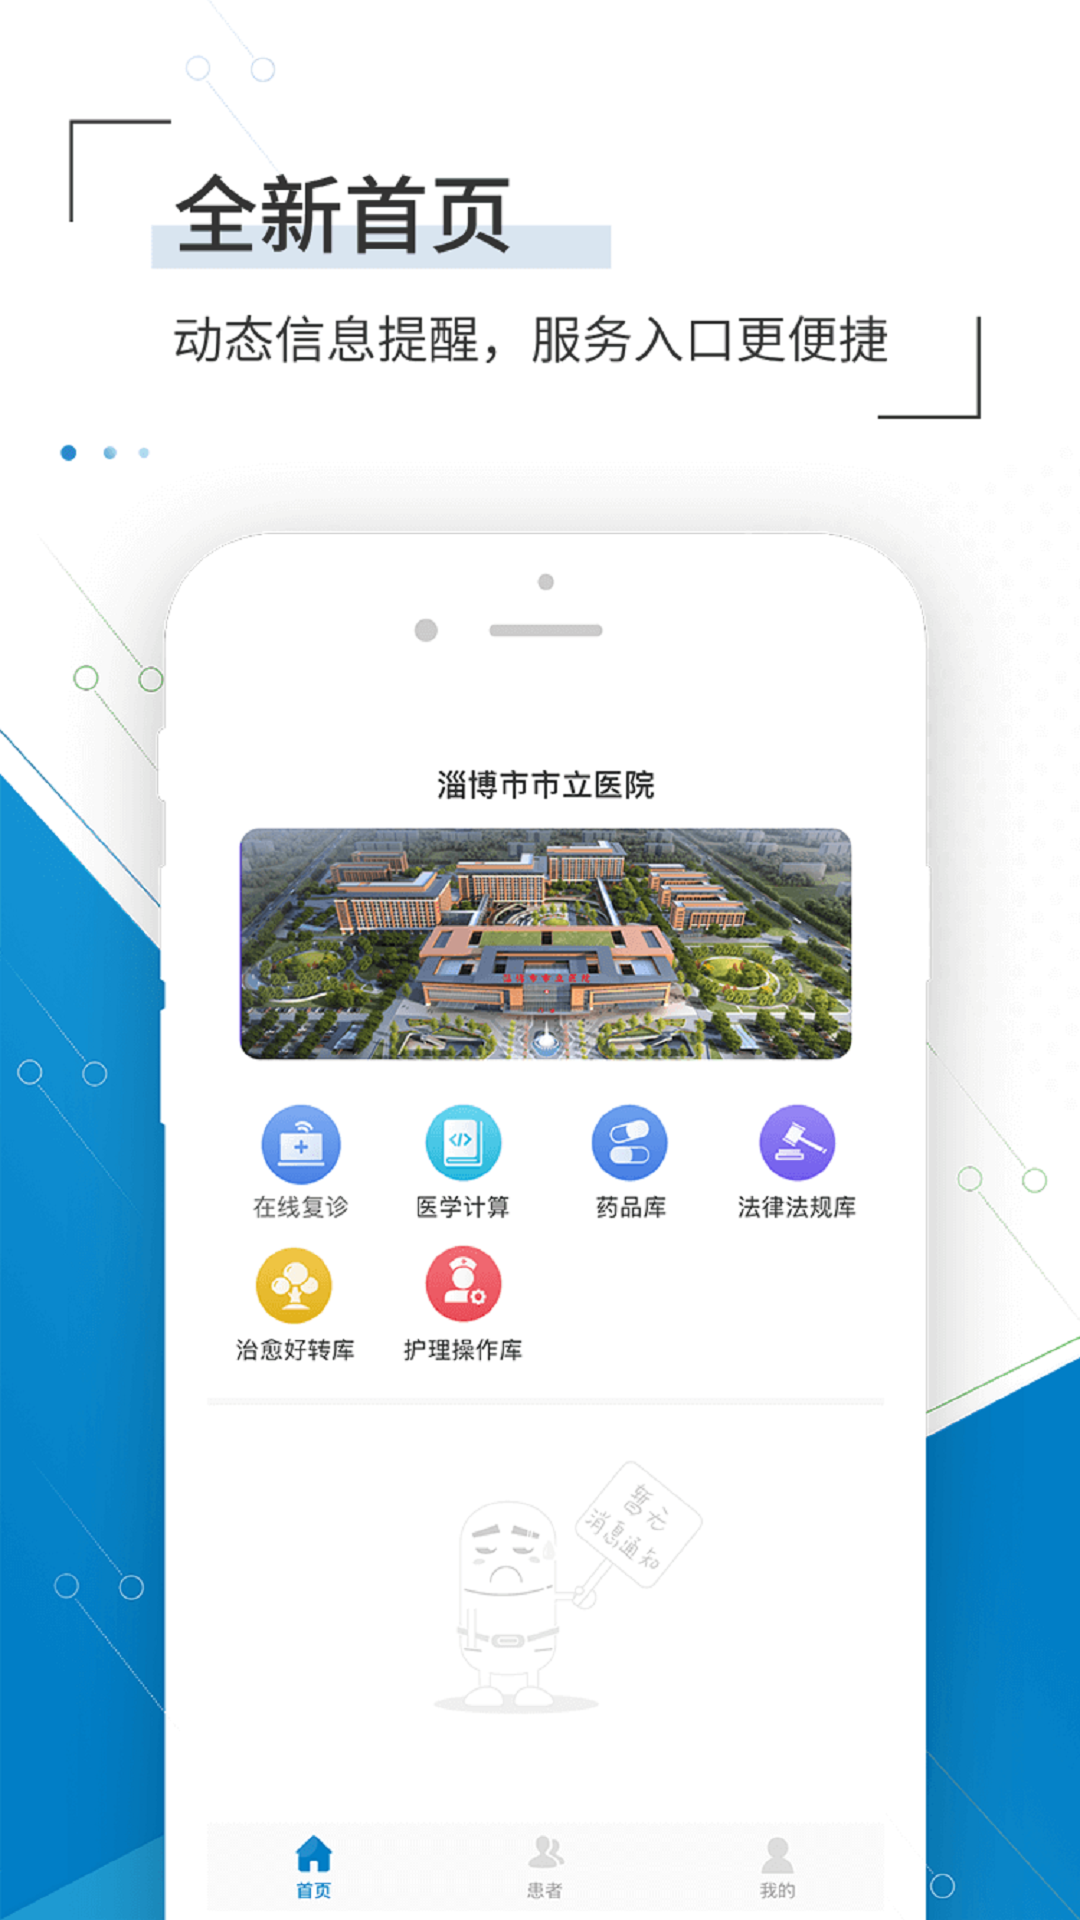 淄博市立医院app1.2.5